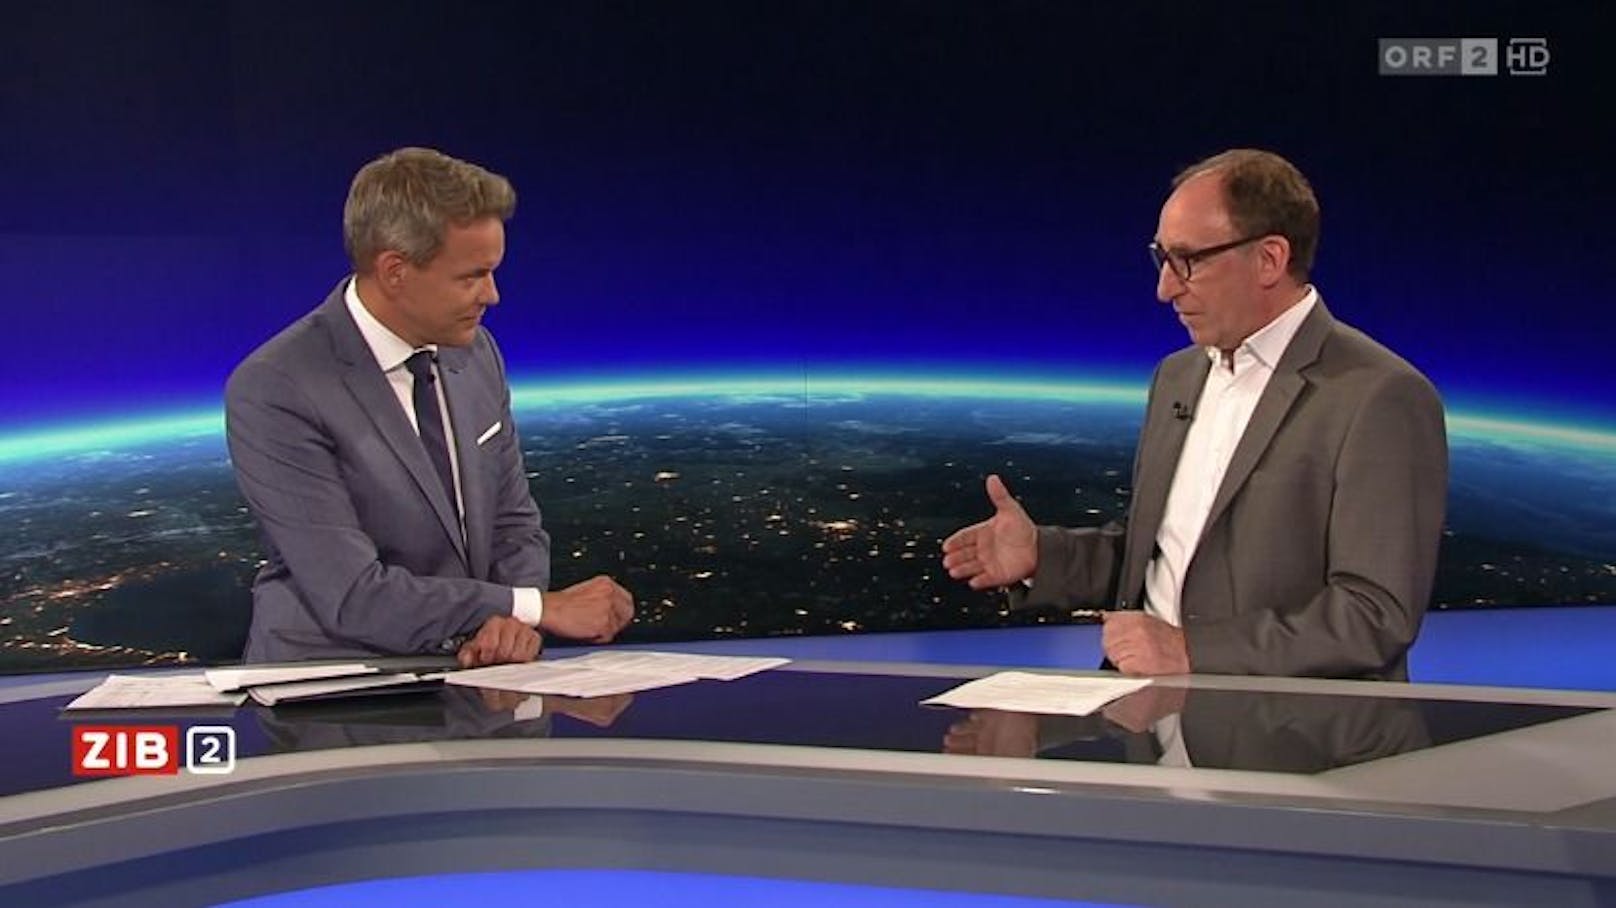 ORF-Moderator Martin Thür im Gespräch mit Gesundheitsminister Johannes Rauch.